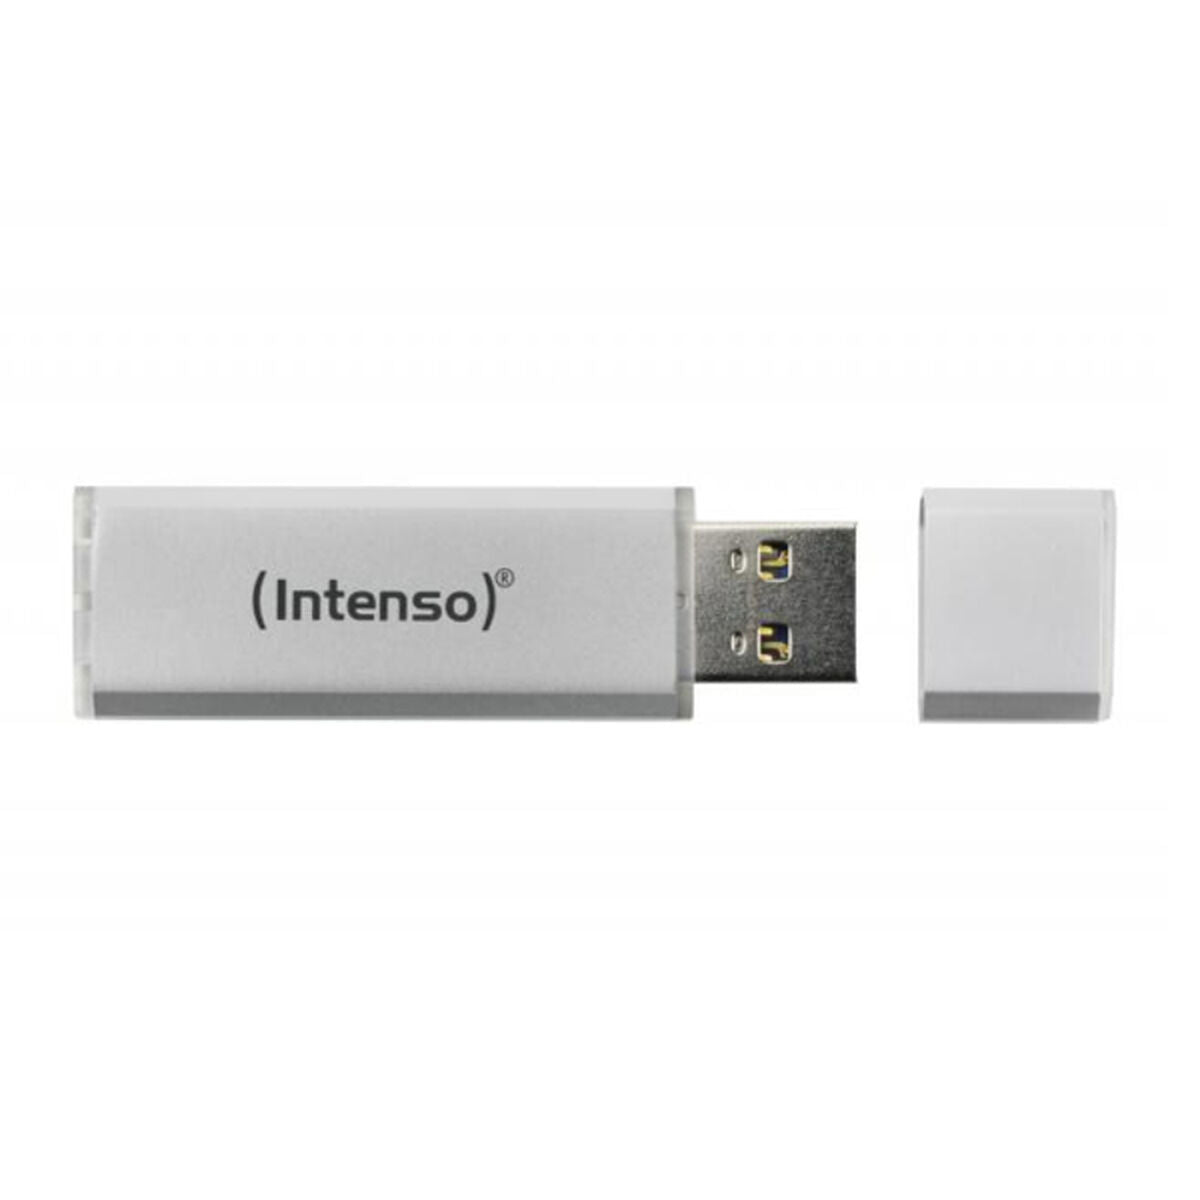 Pendrive INTENSO 3531492 USB 3.0 256 GB Silber Silber 256 GB USB-Stick